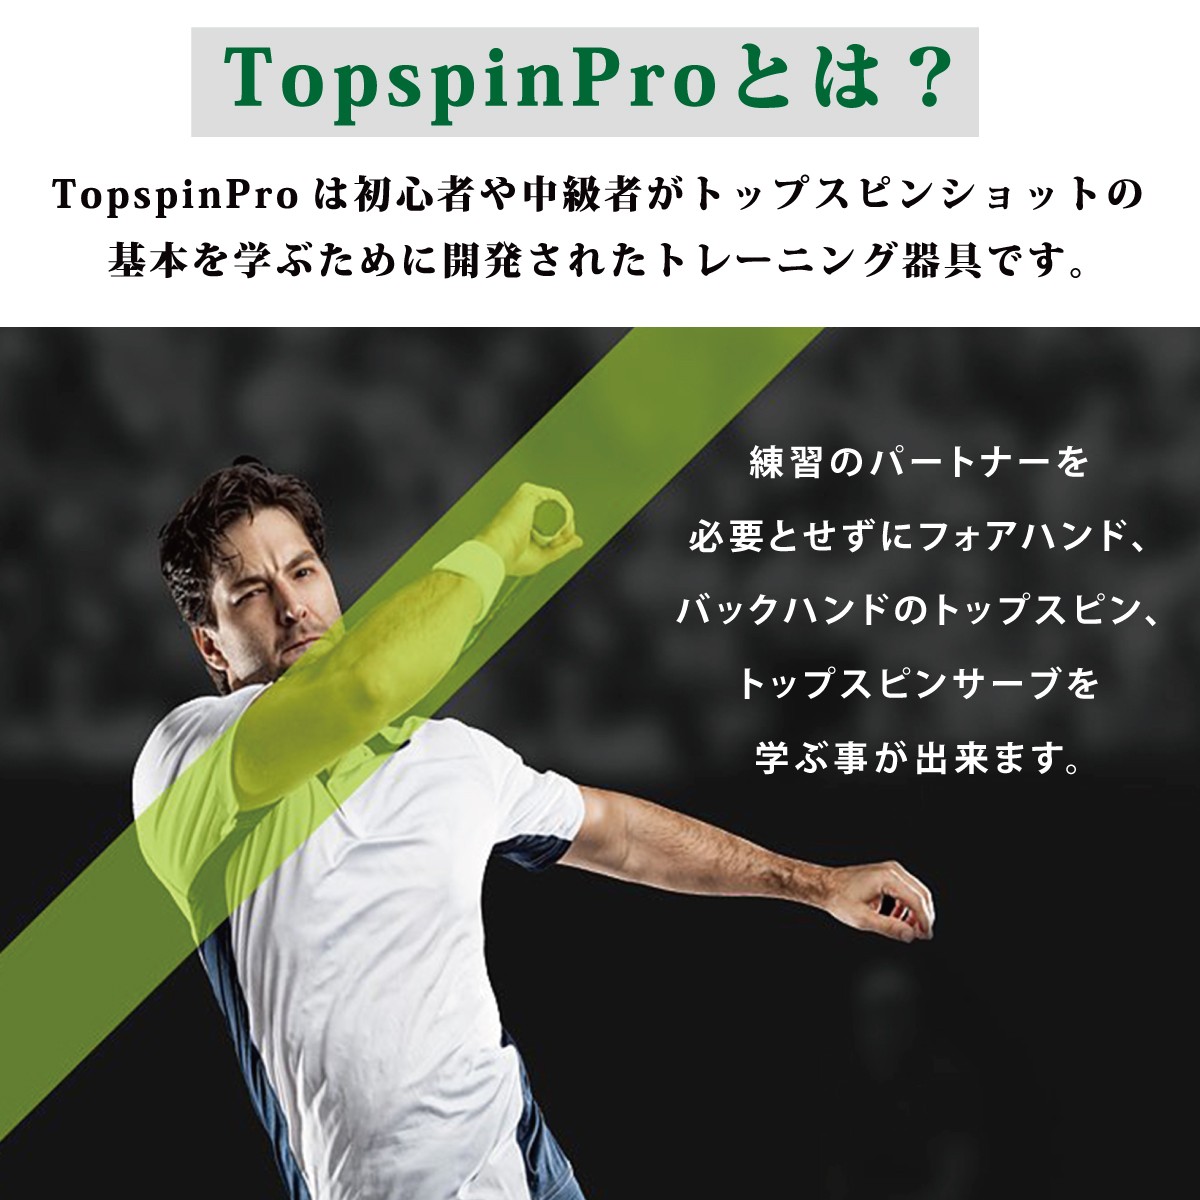 テニス 練習器具 練習機 硬式テニス TopspinPro トップスピンプロ :top 